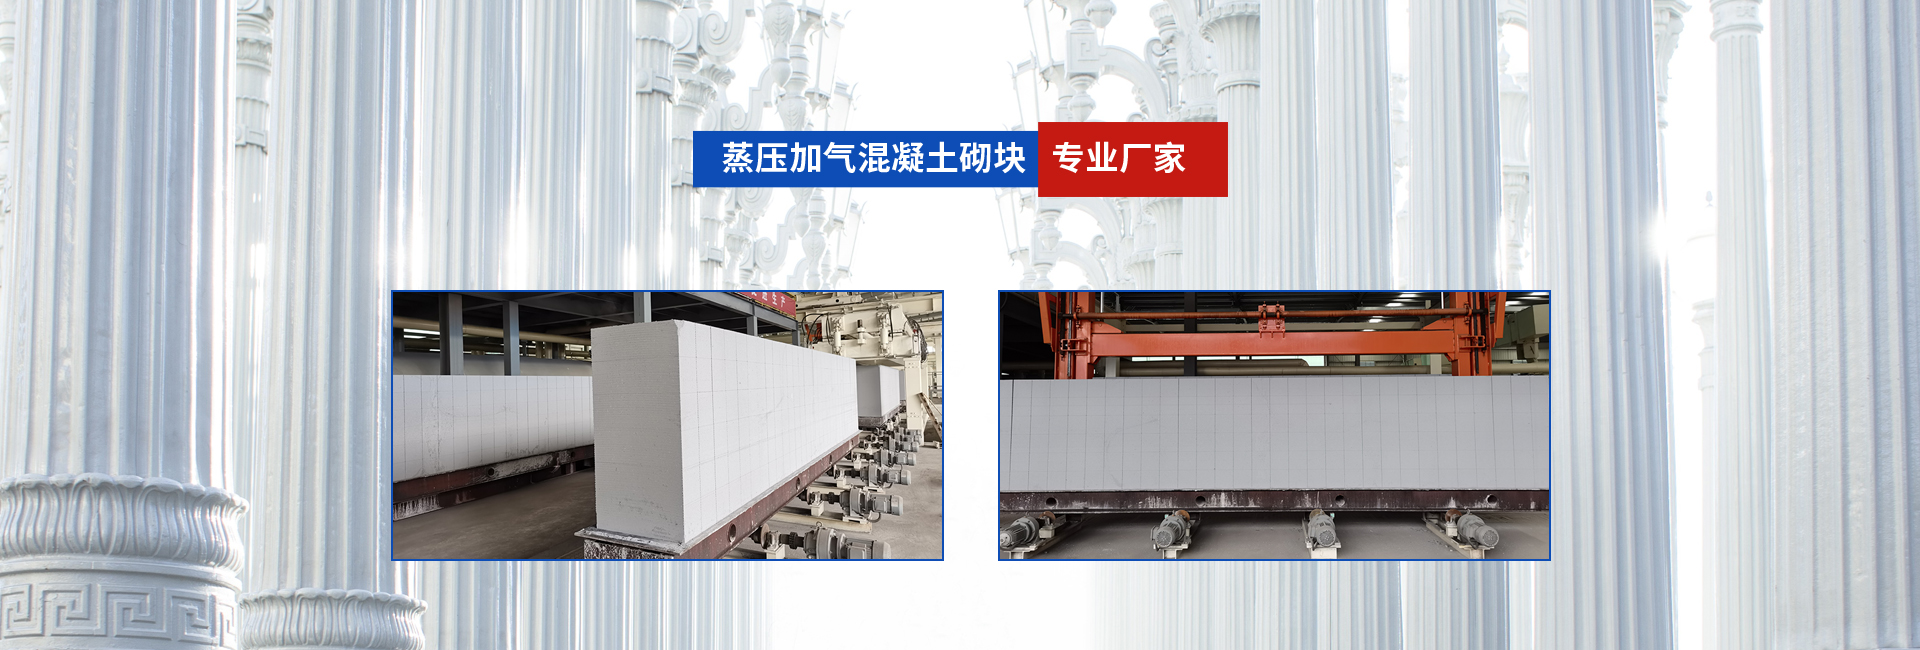 广安市盛禾新型建材有限公司是重庆加气砖厂家,加气砖隔墙